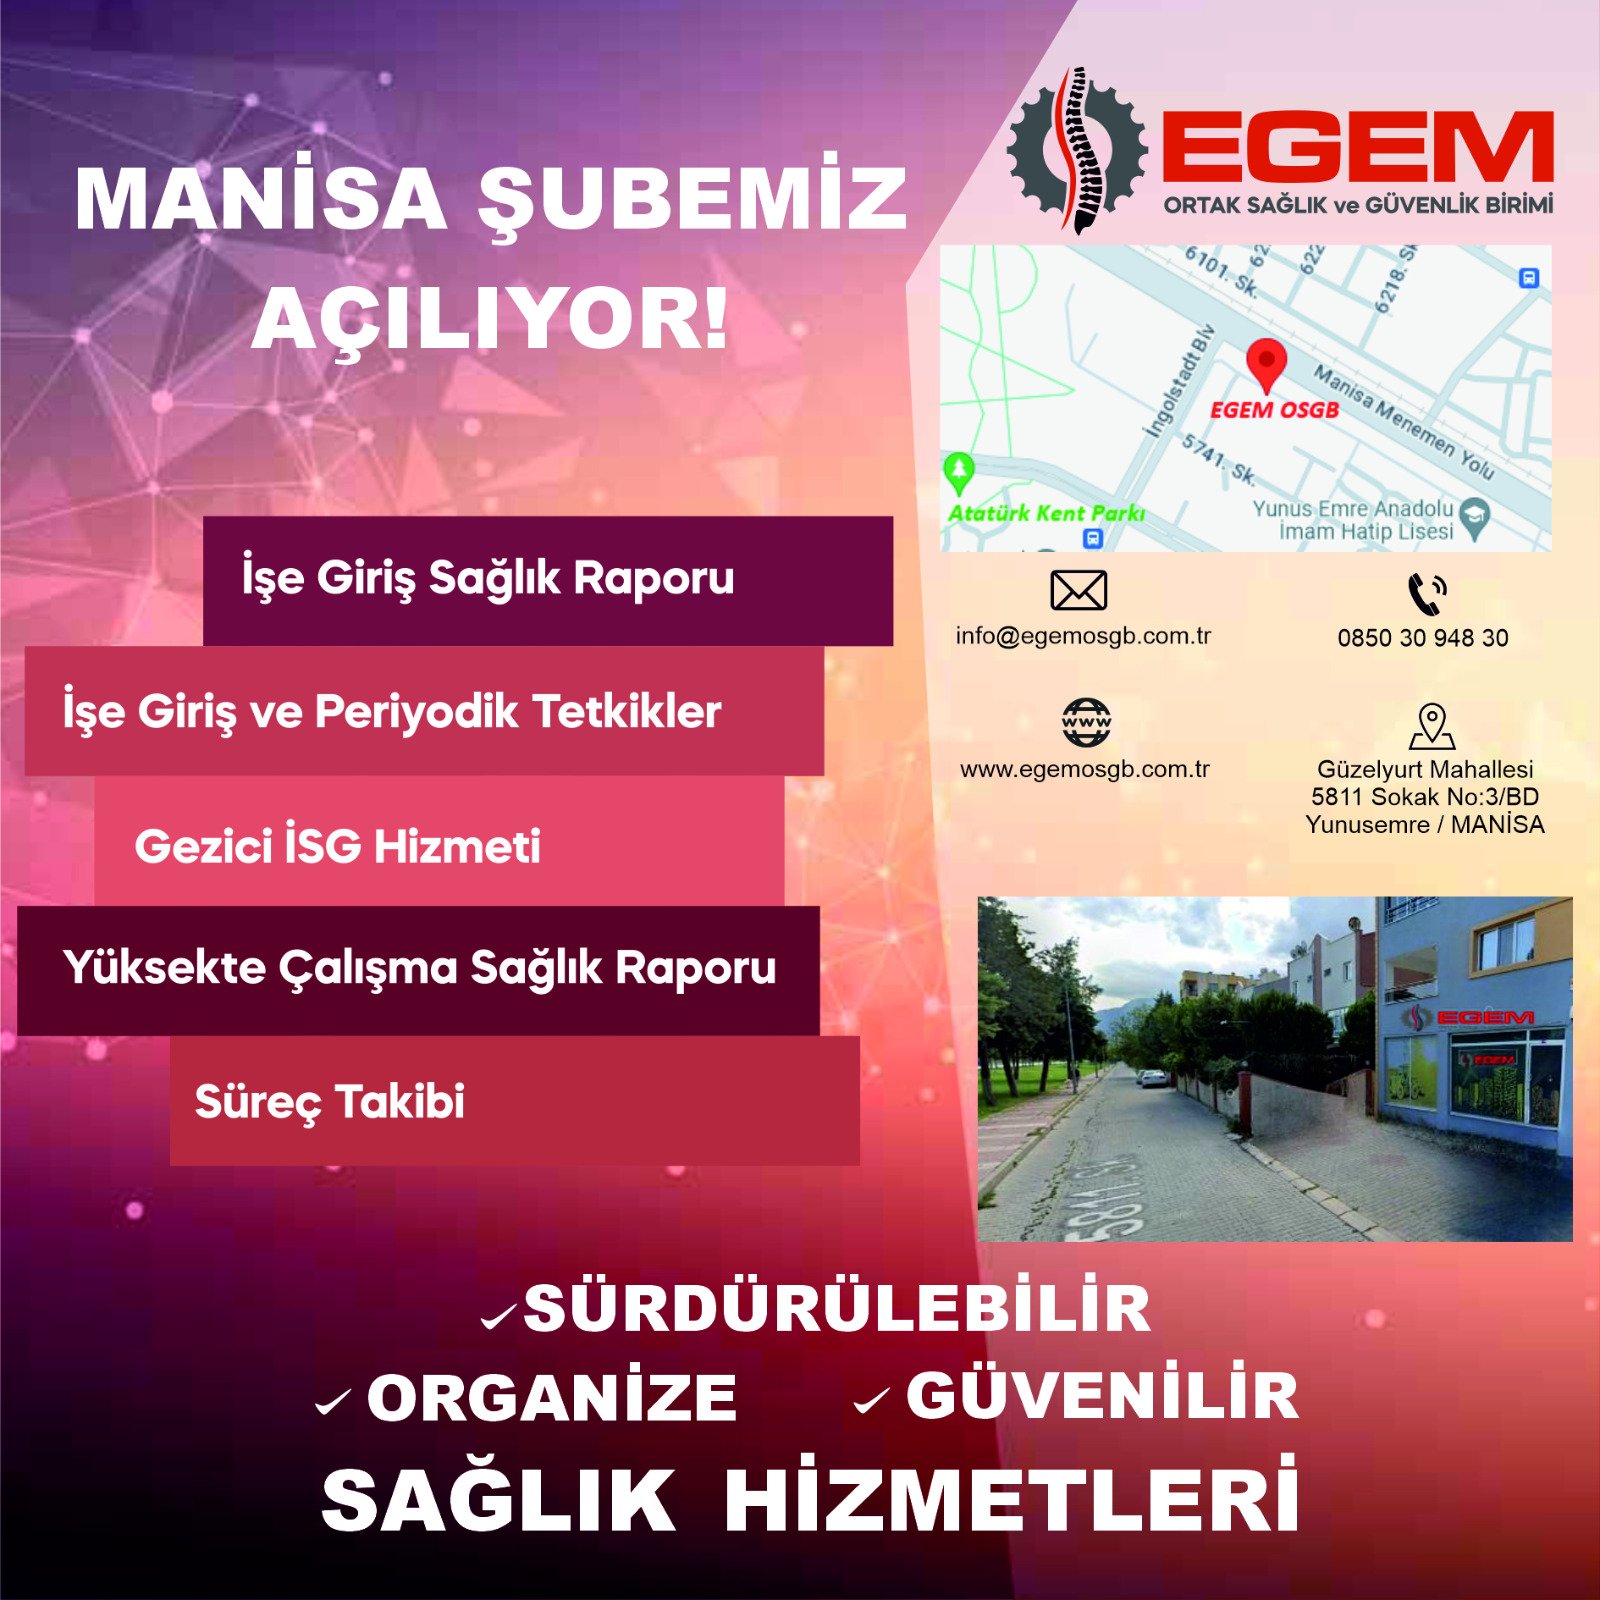 Egem OSGB, İzmir'den Manisa'ya Uzanan Sağlık Hizmetlerine Yeni Bir Soluk Katıyor!